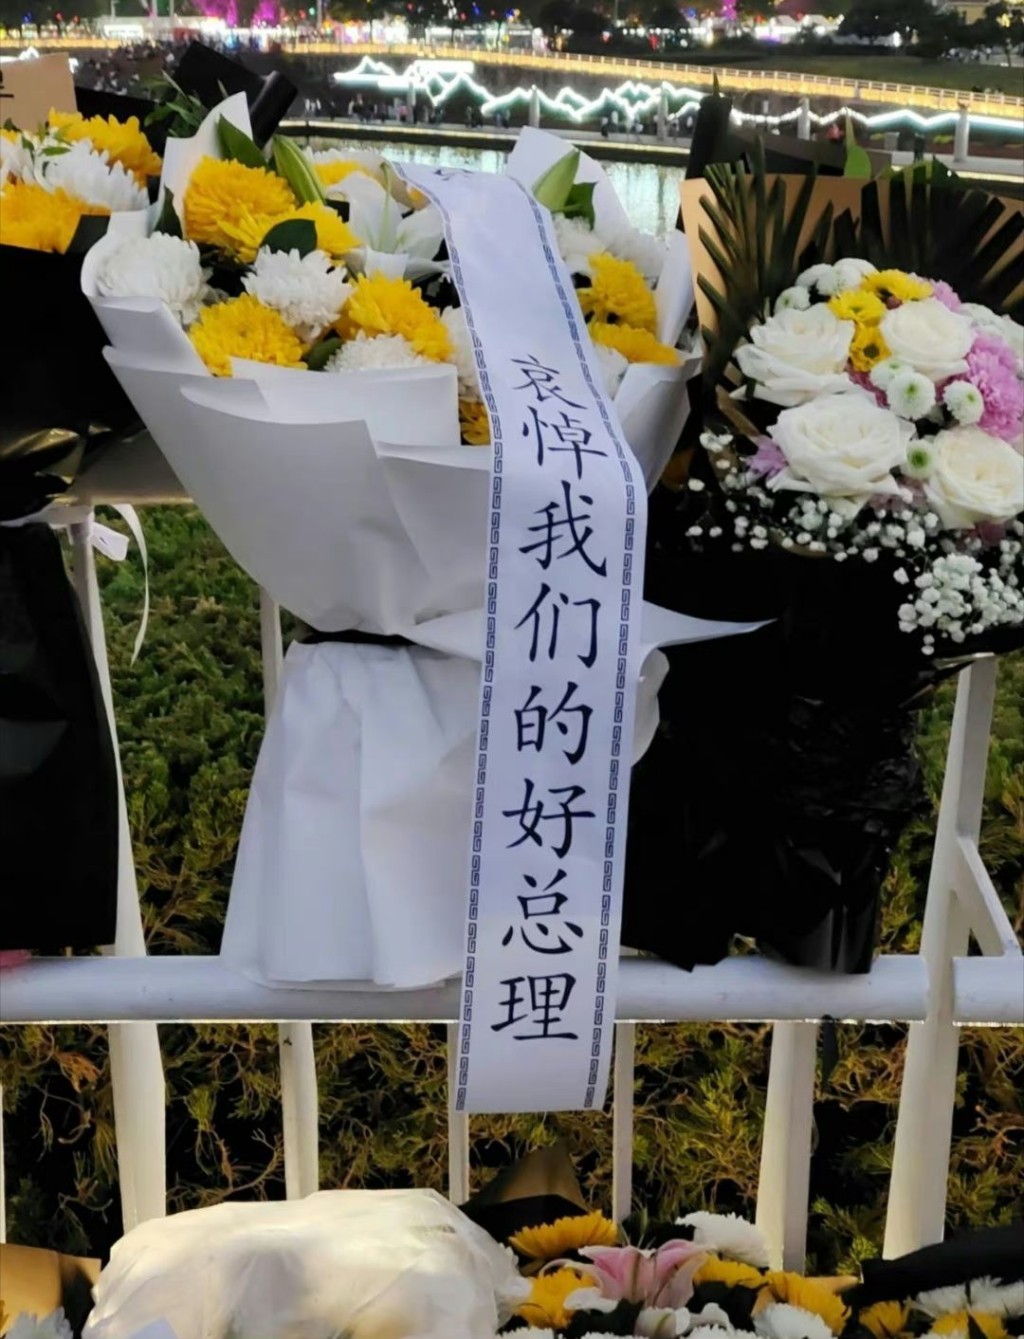 花束上贴有「哀悼我们的好总理」标语。